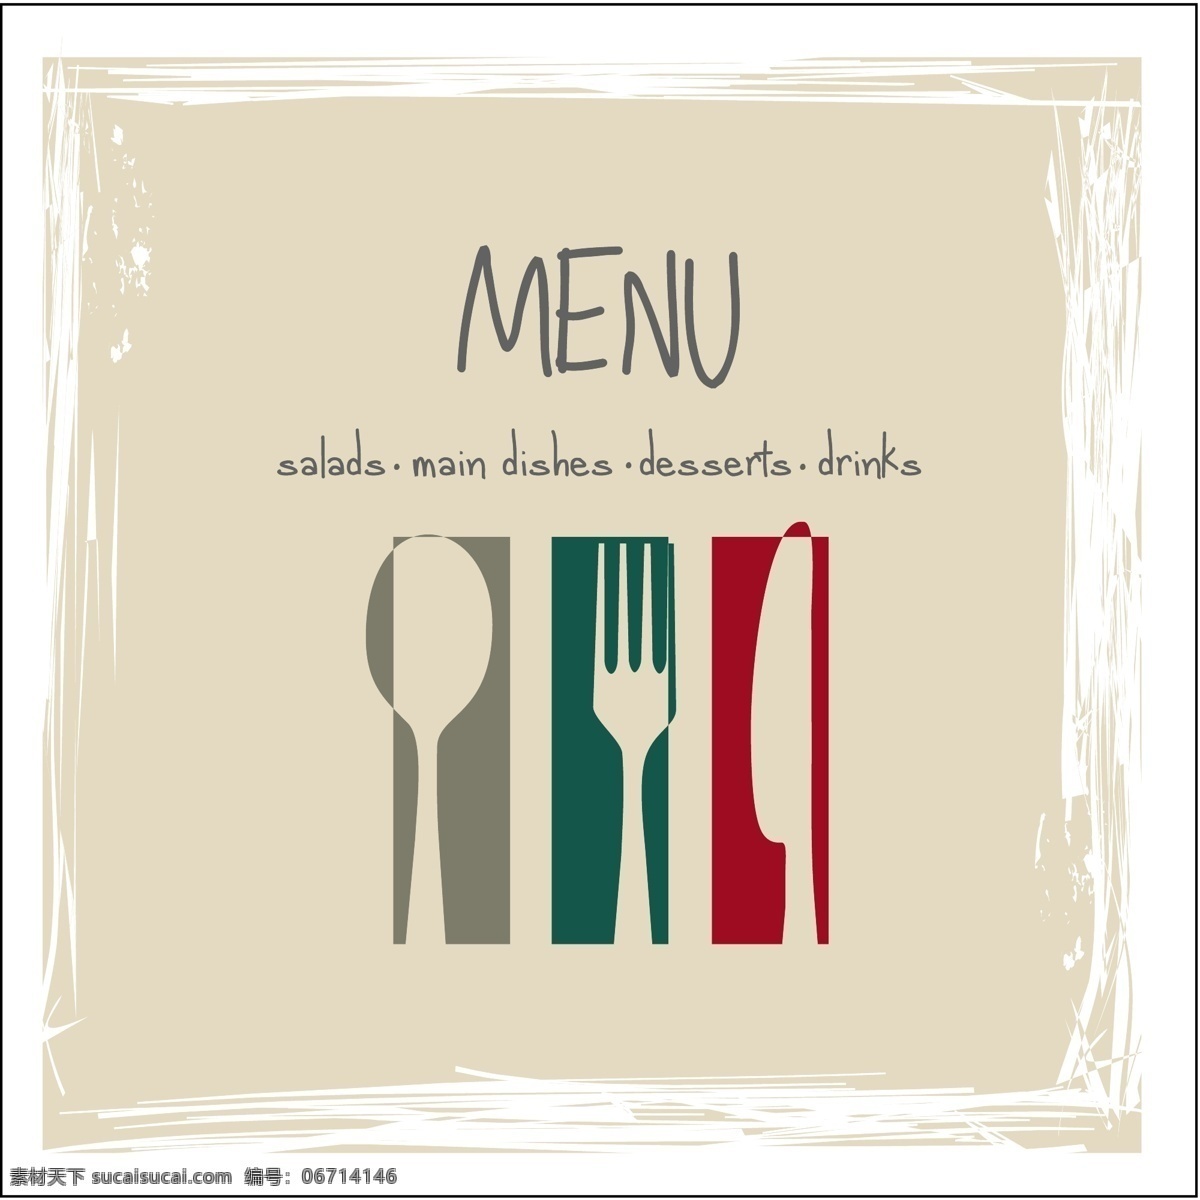 菜单刀叉封面 餐厅 菜单 刀叉 主题 封面 简洁 菜单菜谱 矢量素材 白色